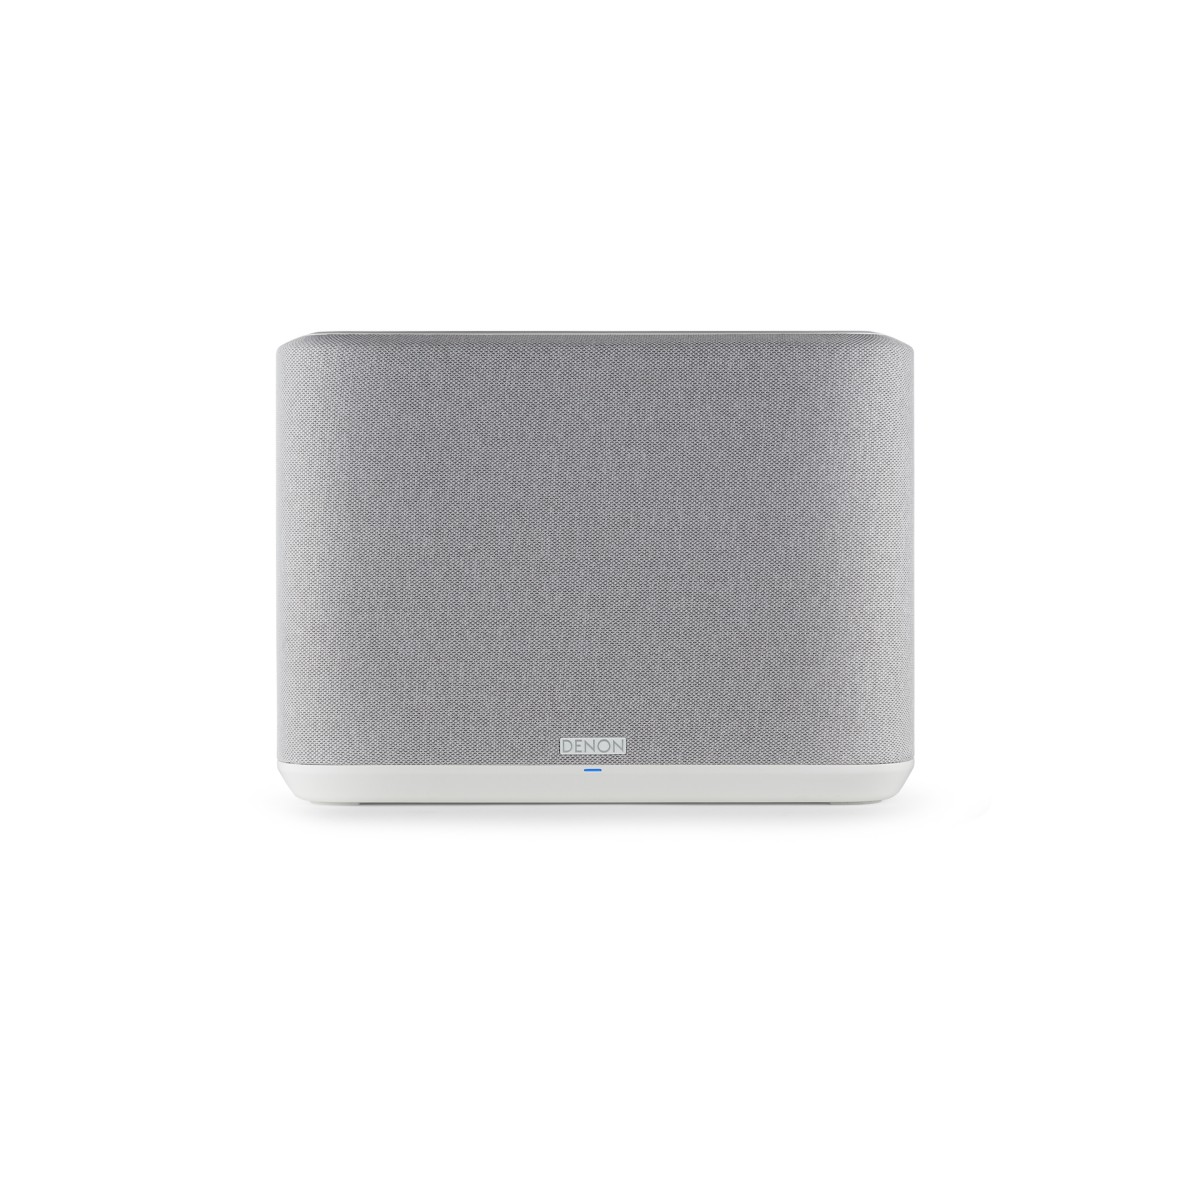 Hier sehen Sie den Artikel Home 250 Wireless Speaker white aus der Kategorie Enceintes sans fil. Dieser Artikel ist erhältlich bei cebrands.ch